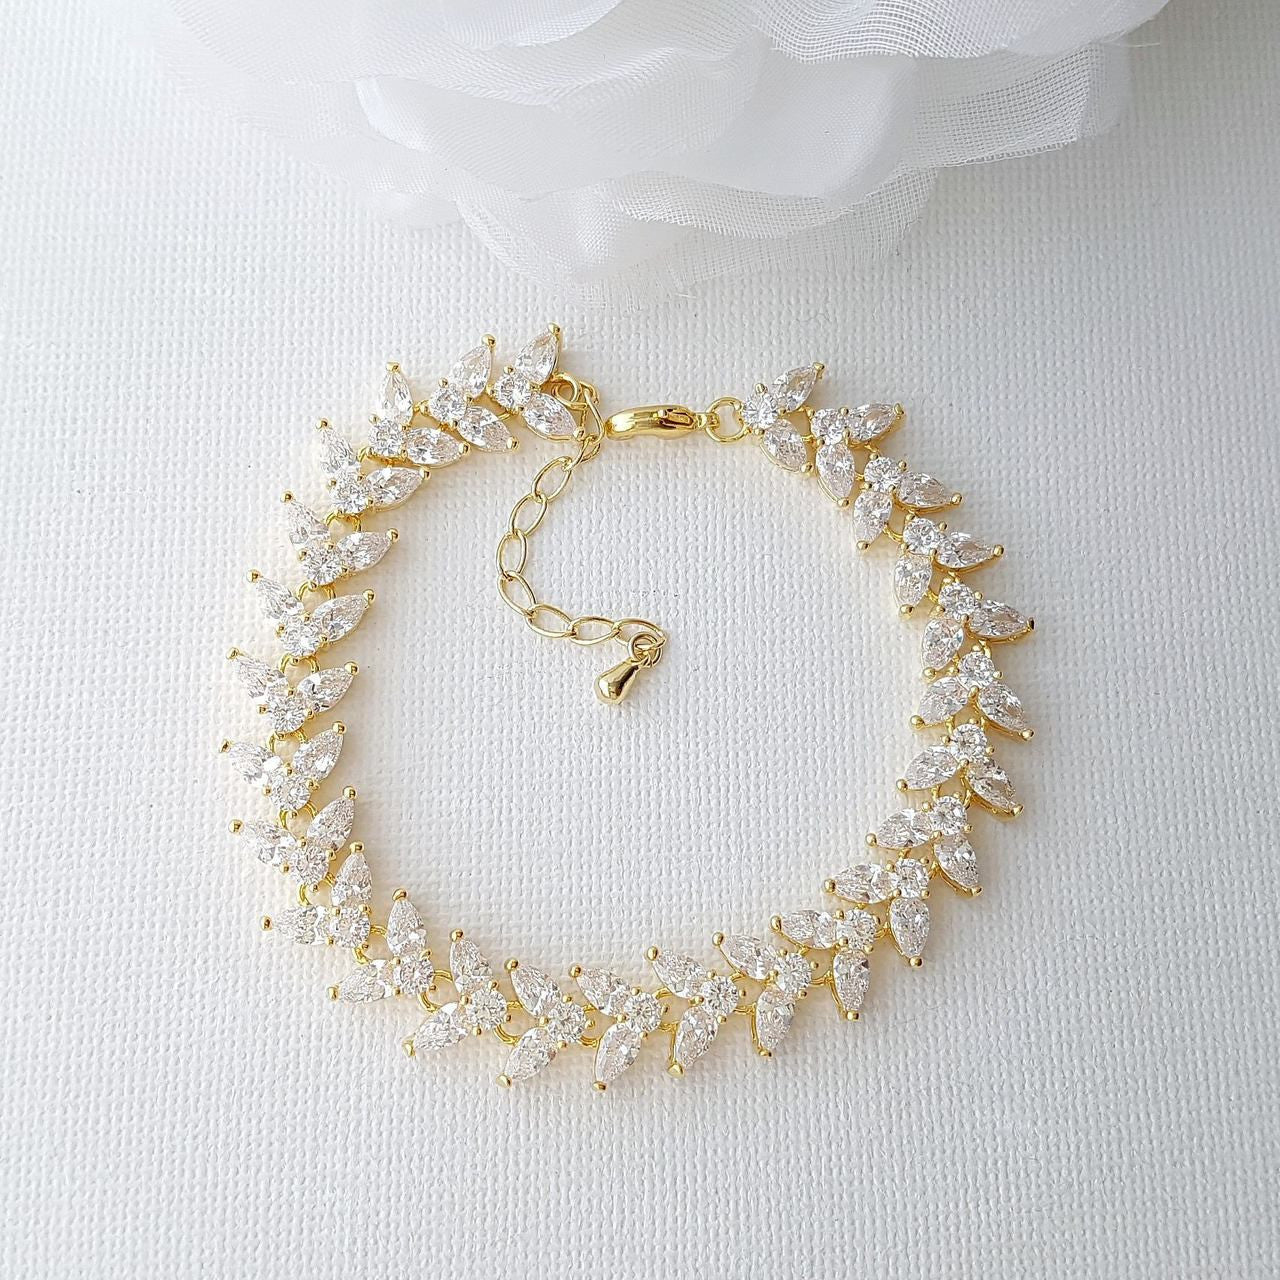 Rose Gold Bracelet for Wedding Formal Events-Katie